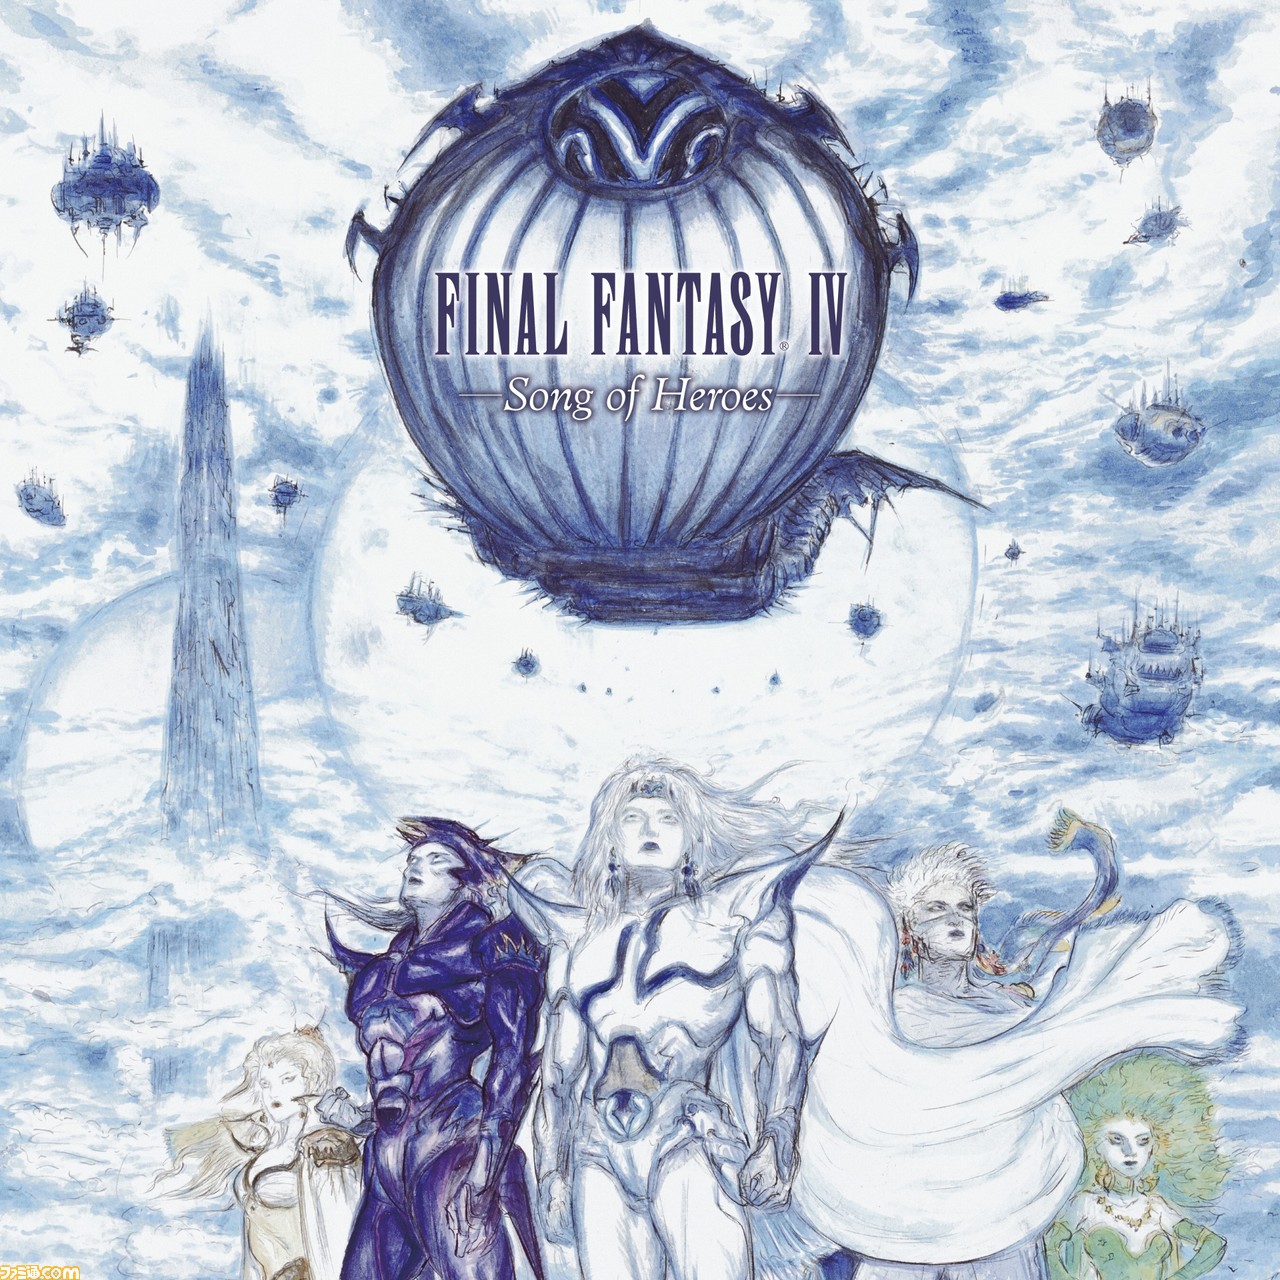 Ff4 30周年記念アナログレコード盤 Final Fantasy Iv Song Of Heroes が本日 8月25日 発売 Mp3ダウンロードコードも封入 ゲーム エンタメ最新情報のファミ通 Com